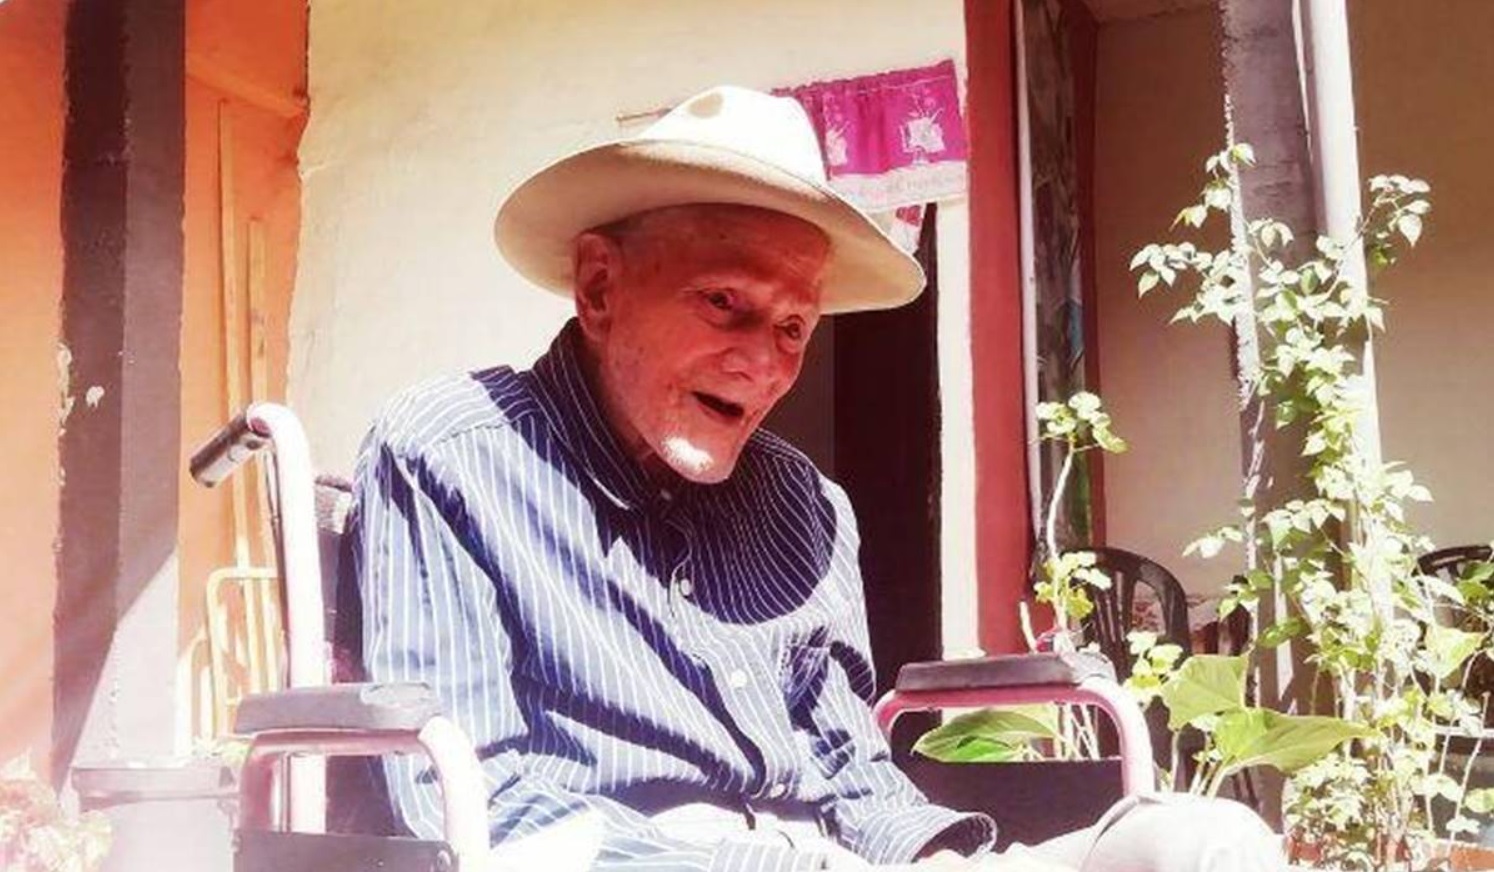 Juan Vicente Perez Mora, certificado em 2022 pelo Guinness World Records como o homem mais velho do mundo